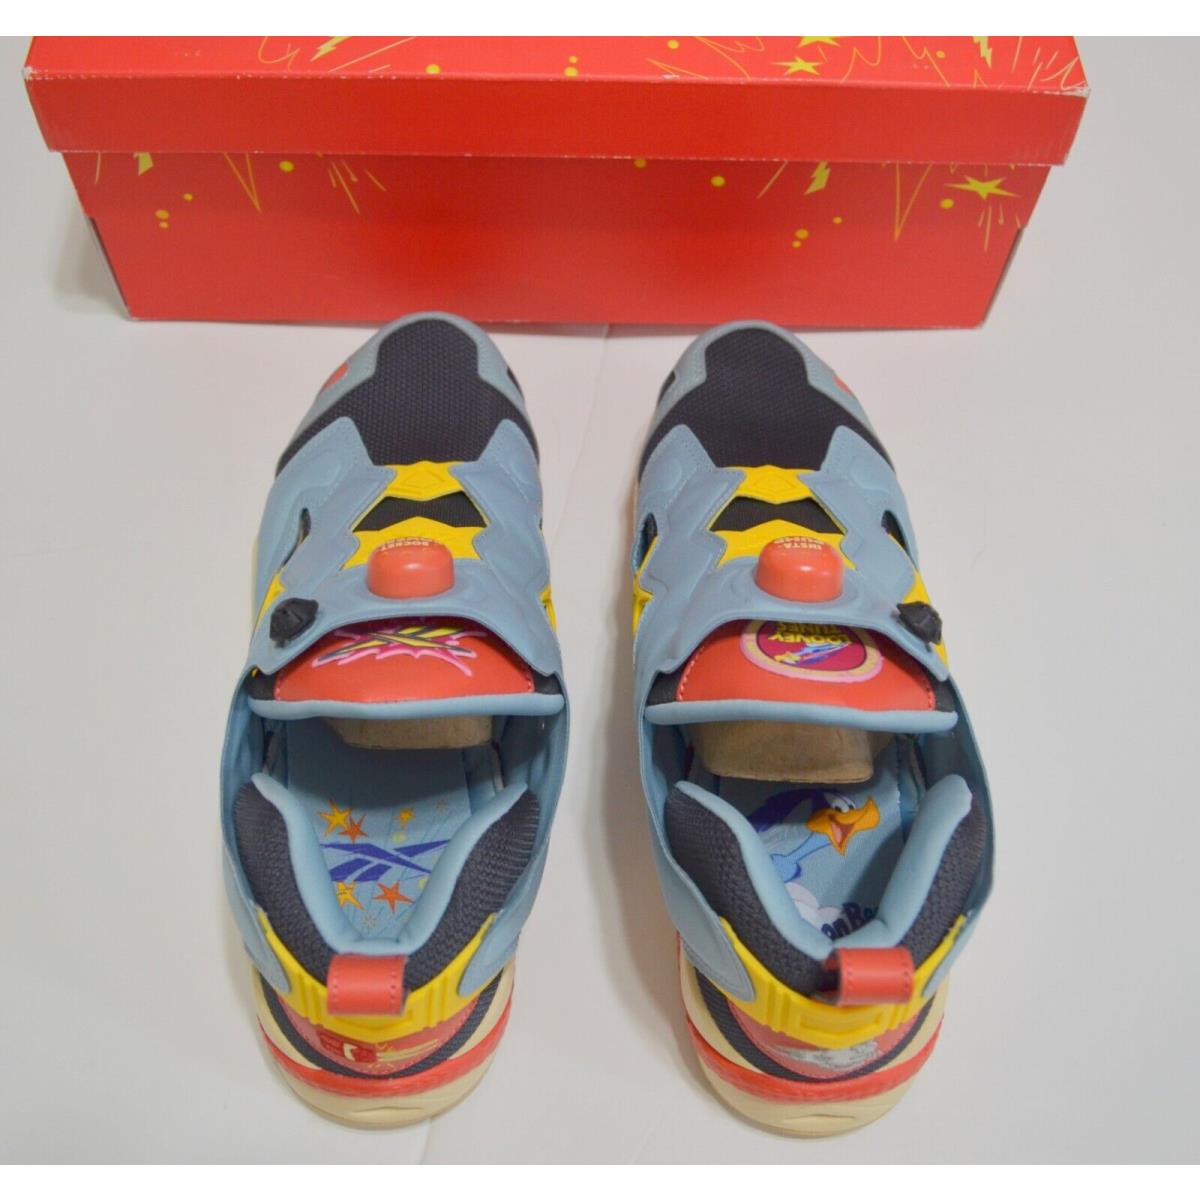 Reebok shoes Instapump Fury - Multicolor 3